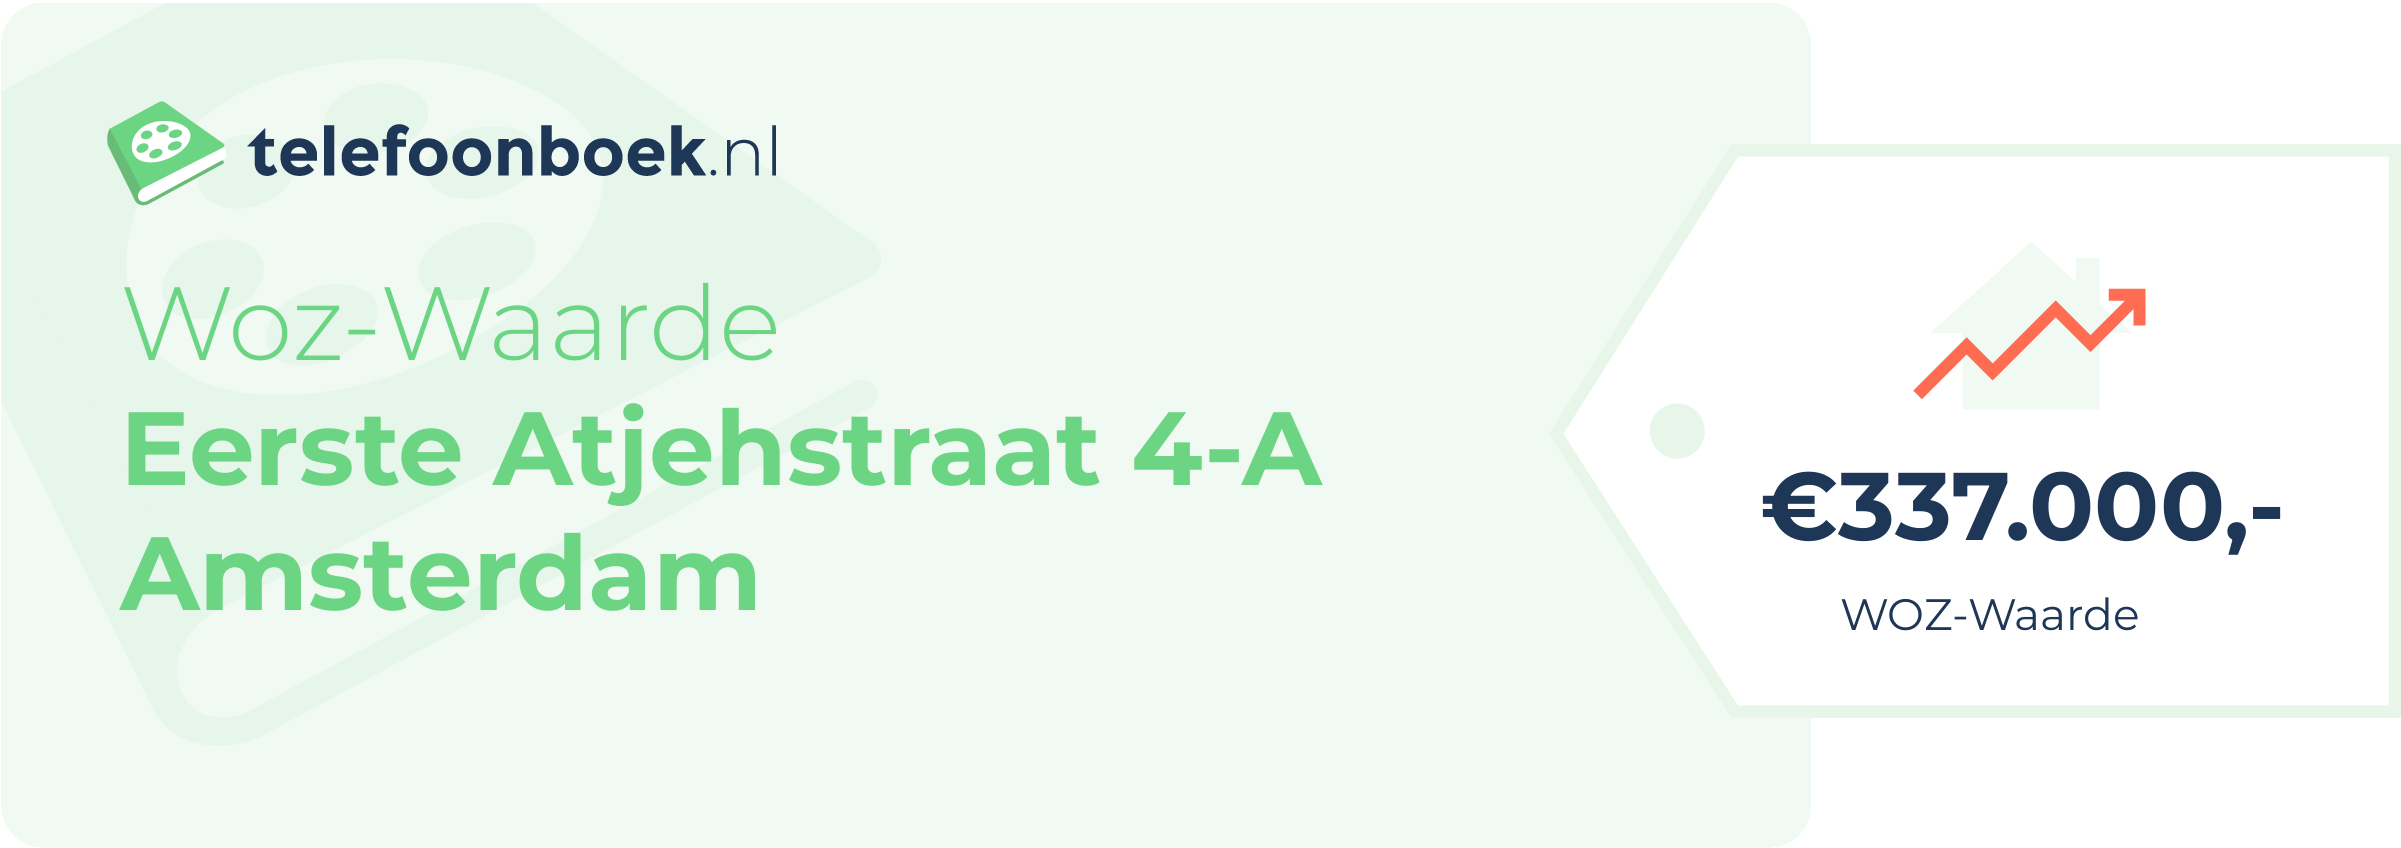 WOZ-waarde Eerste Atjehstraat 4-A Amsterdam